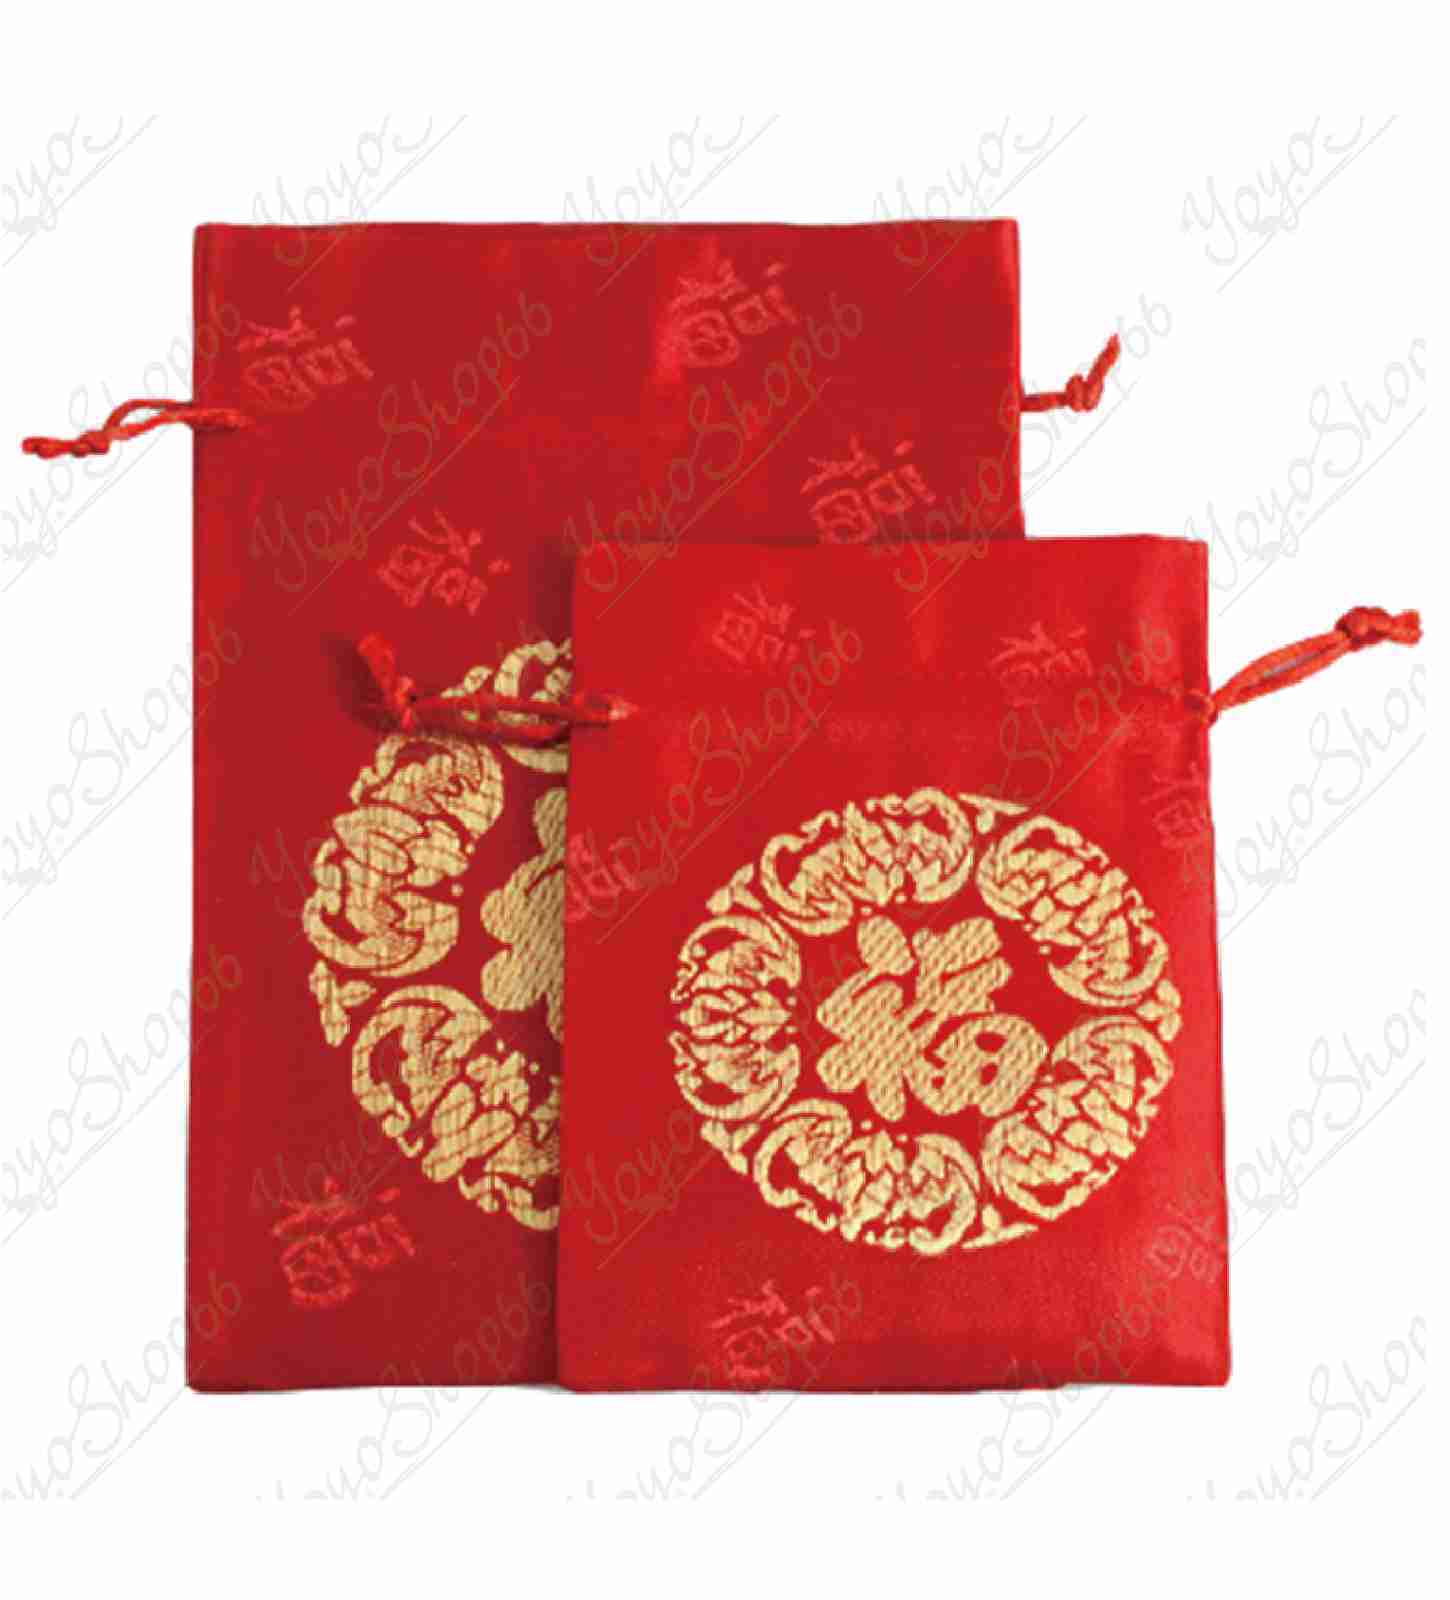 #620 小福袋錦囊(1入) 新年福袋 紅色束口袋 絨布收納袋 紅色小布袋 平安福字 珠寶袋子 抽繩束口 福袋 飾品包裝